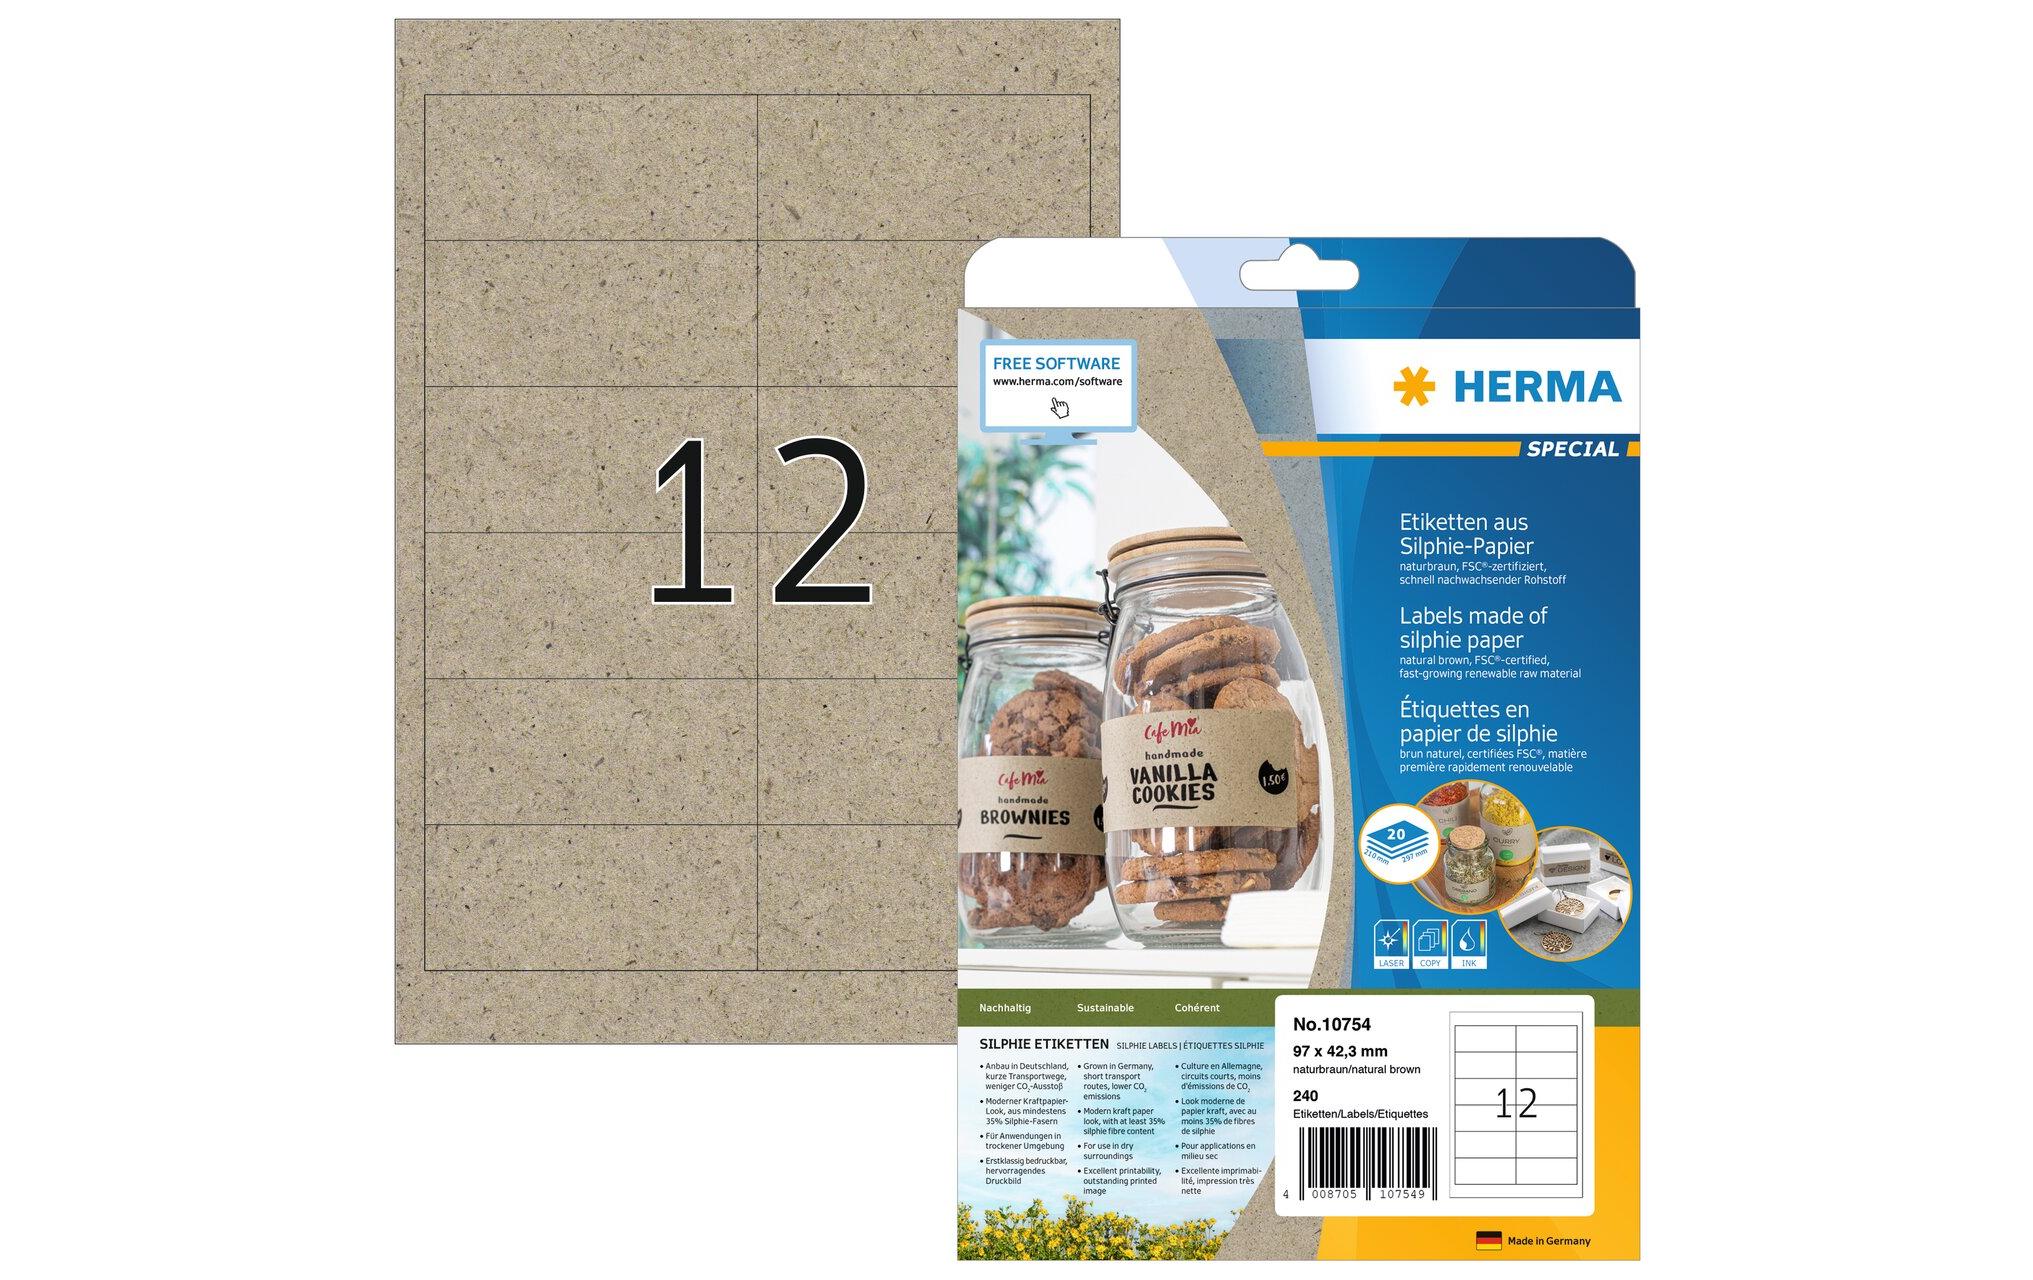 HERMA Universal-Etiketten 97 x 42.3 mm, 20 Blatt, Braun